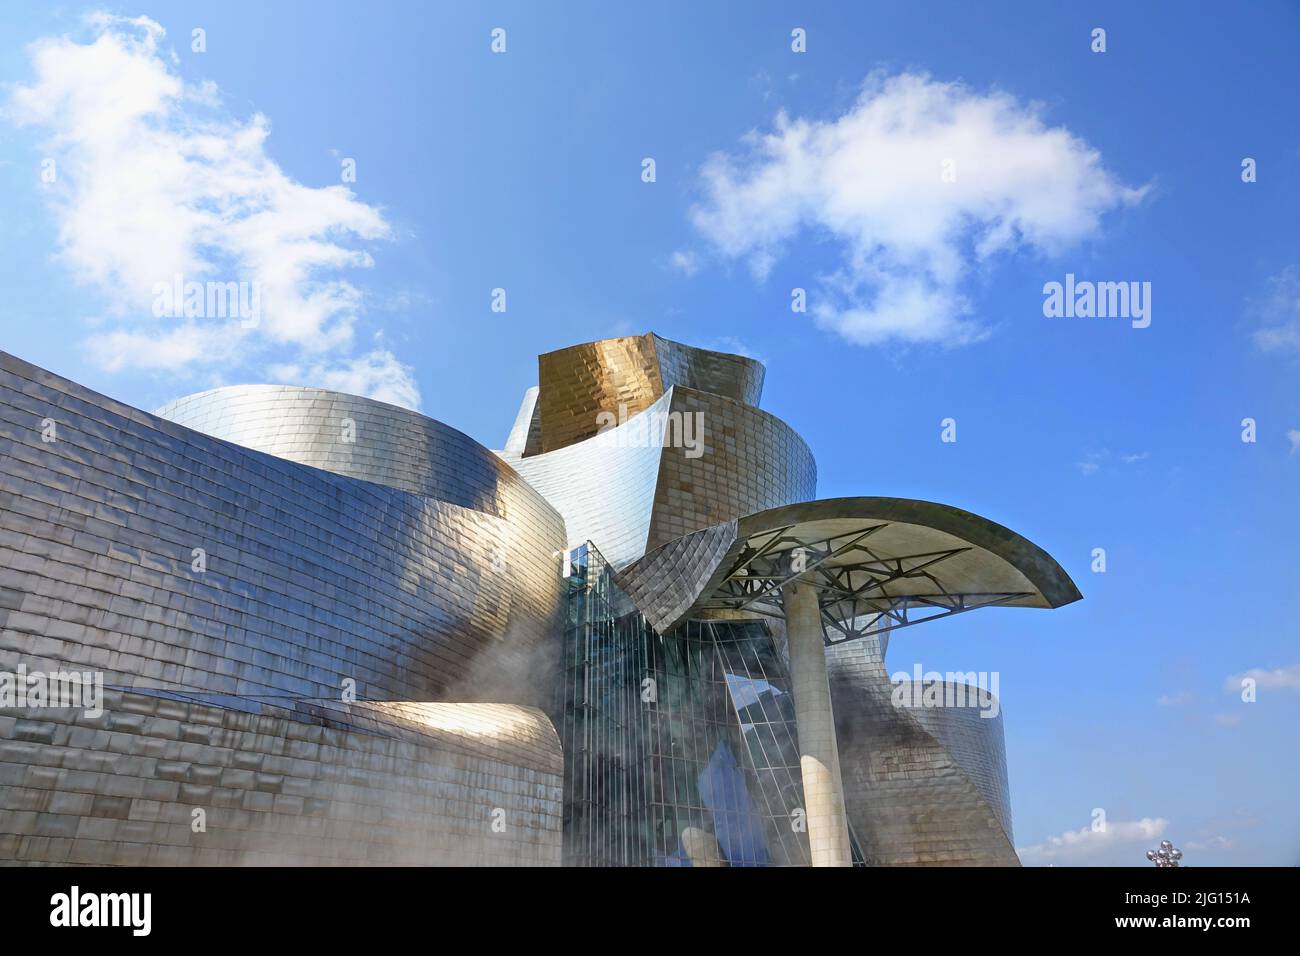 Das Guggenheim Museum für moderne und zeitgenössische Kunst wurde vom Architekten Frank Gehry entworfen. Bilbao, Spanien - August 2018 Stockfoto